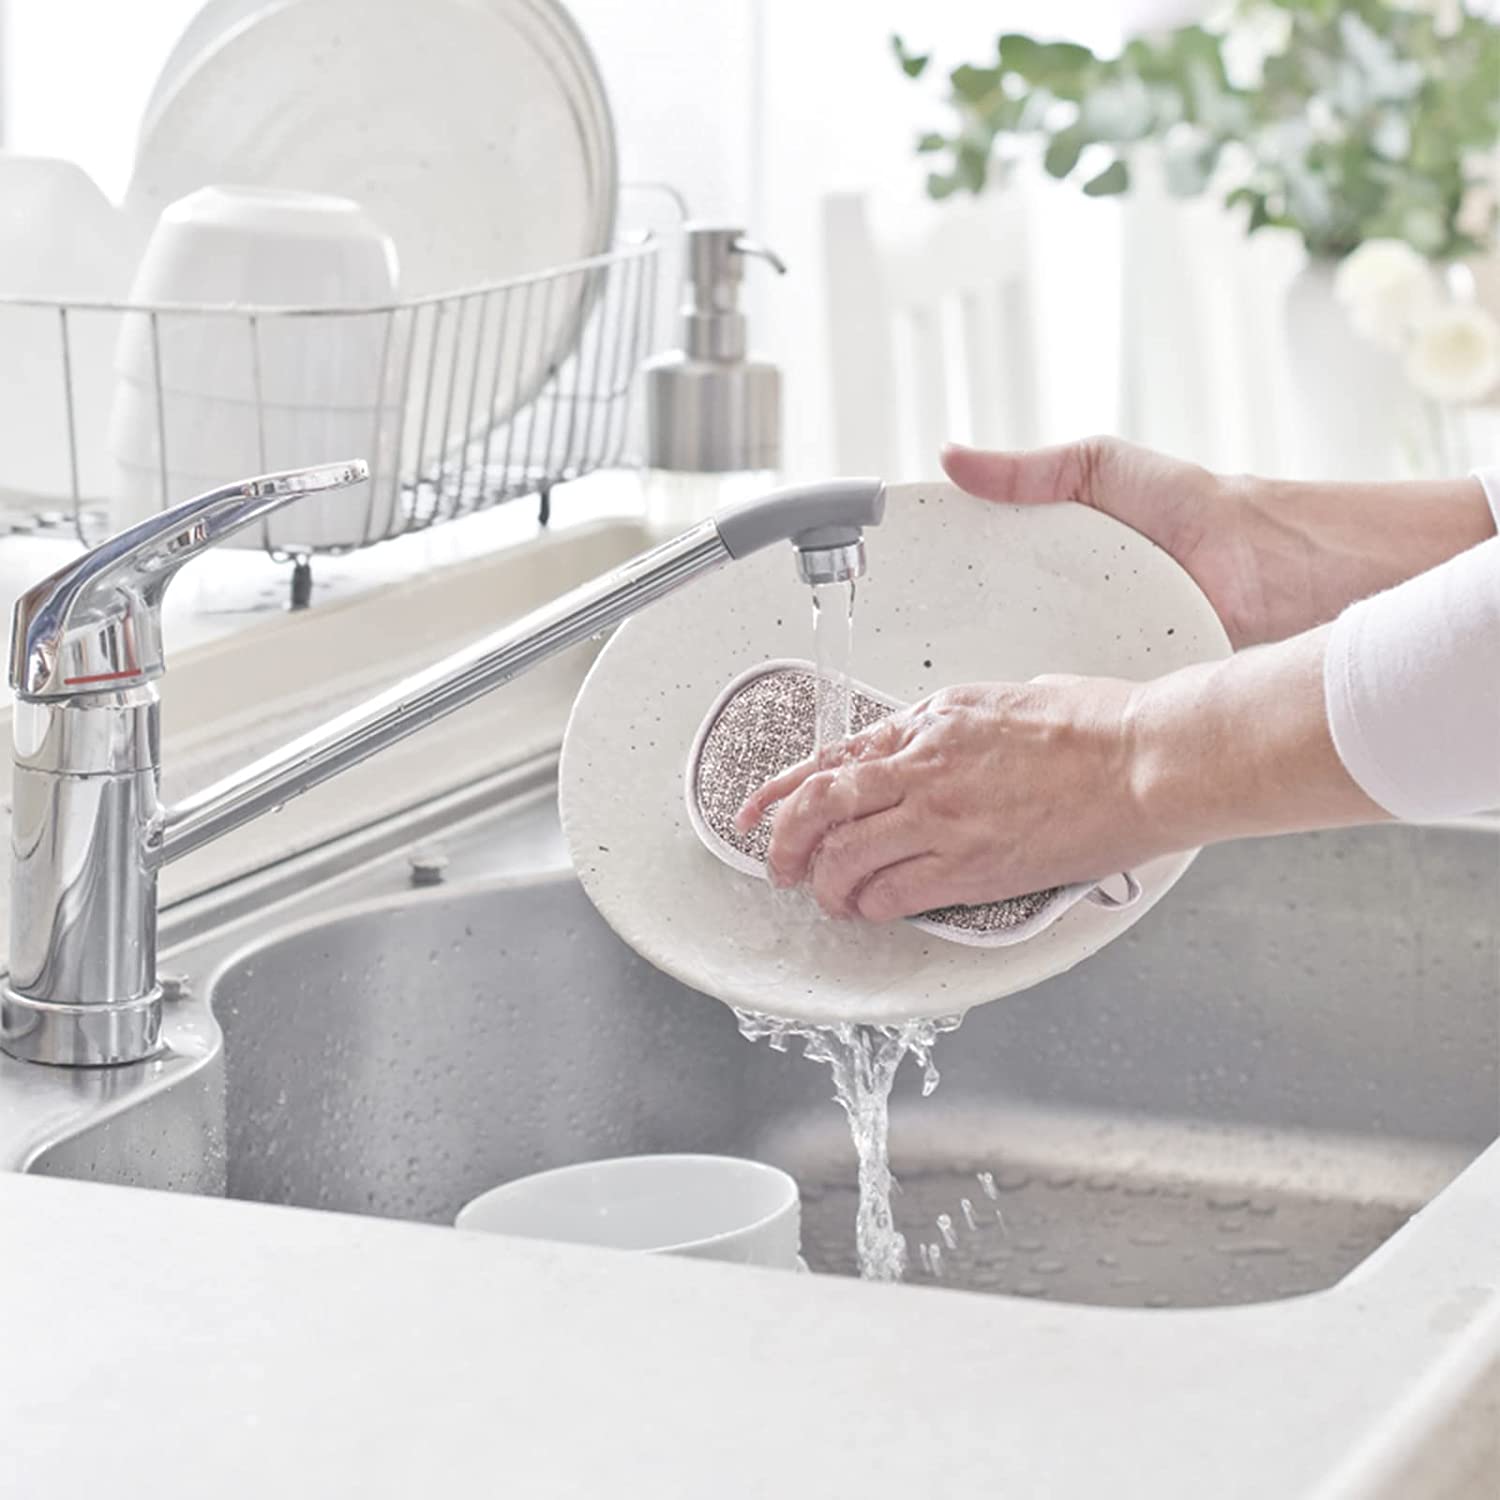 8 morceaux d’éponge de cuisine réutilisable lavable et antibactérie